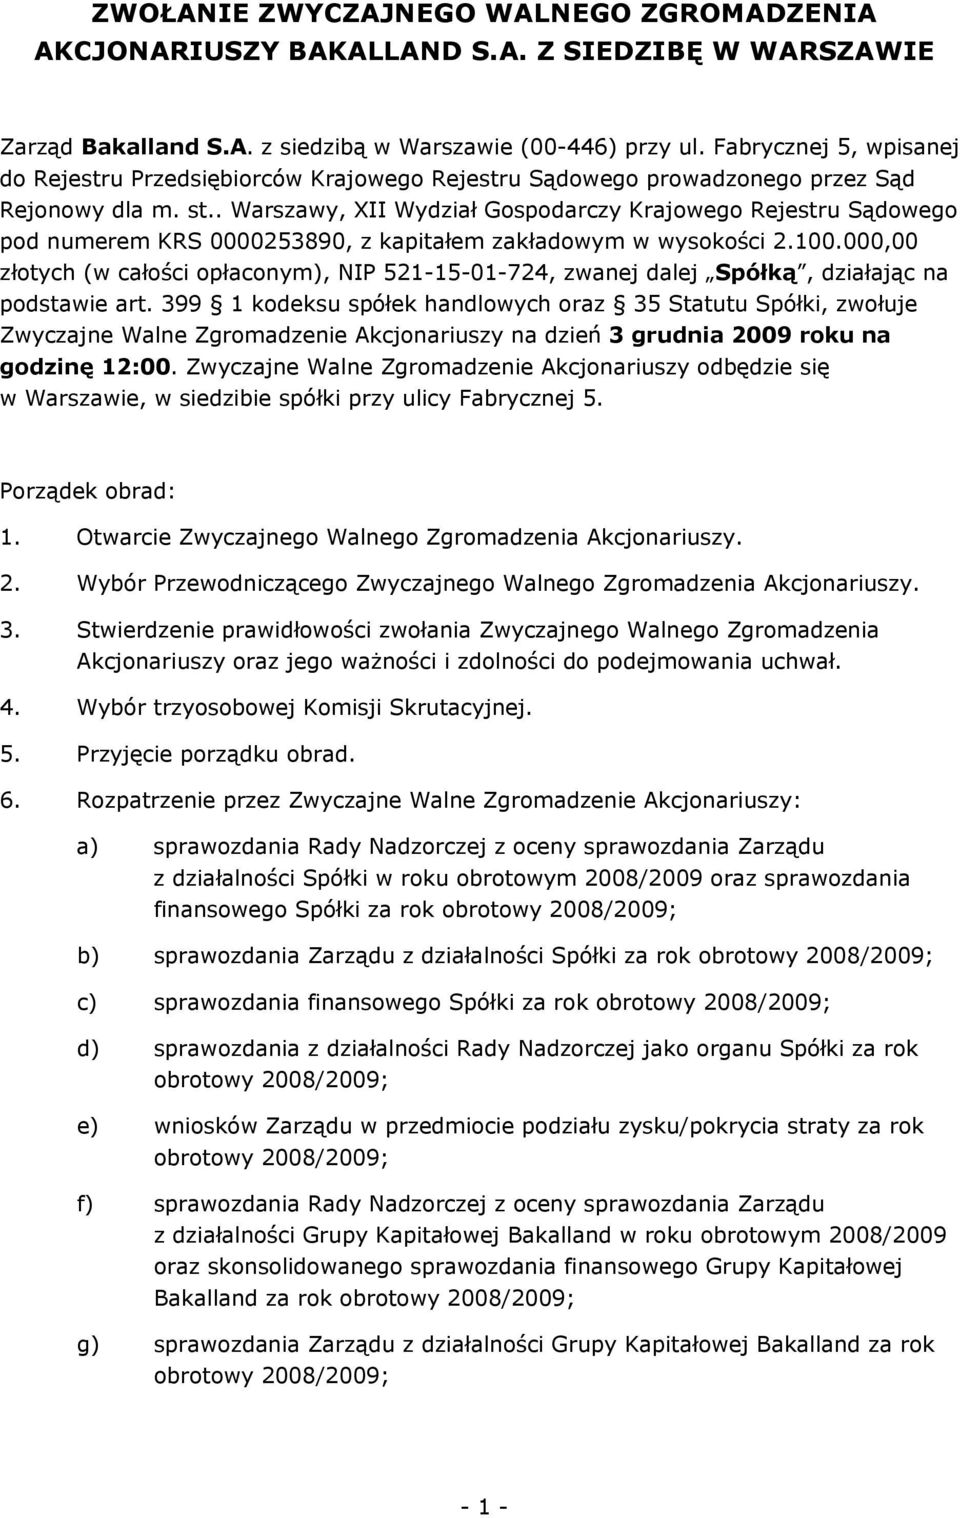 . Warszawy, XII Wydział Gospodarczy Krajowego Rejestru Sądowego pod numerem KRS 0000253890, z kapitałem zakładowym w wysokości 2.100.